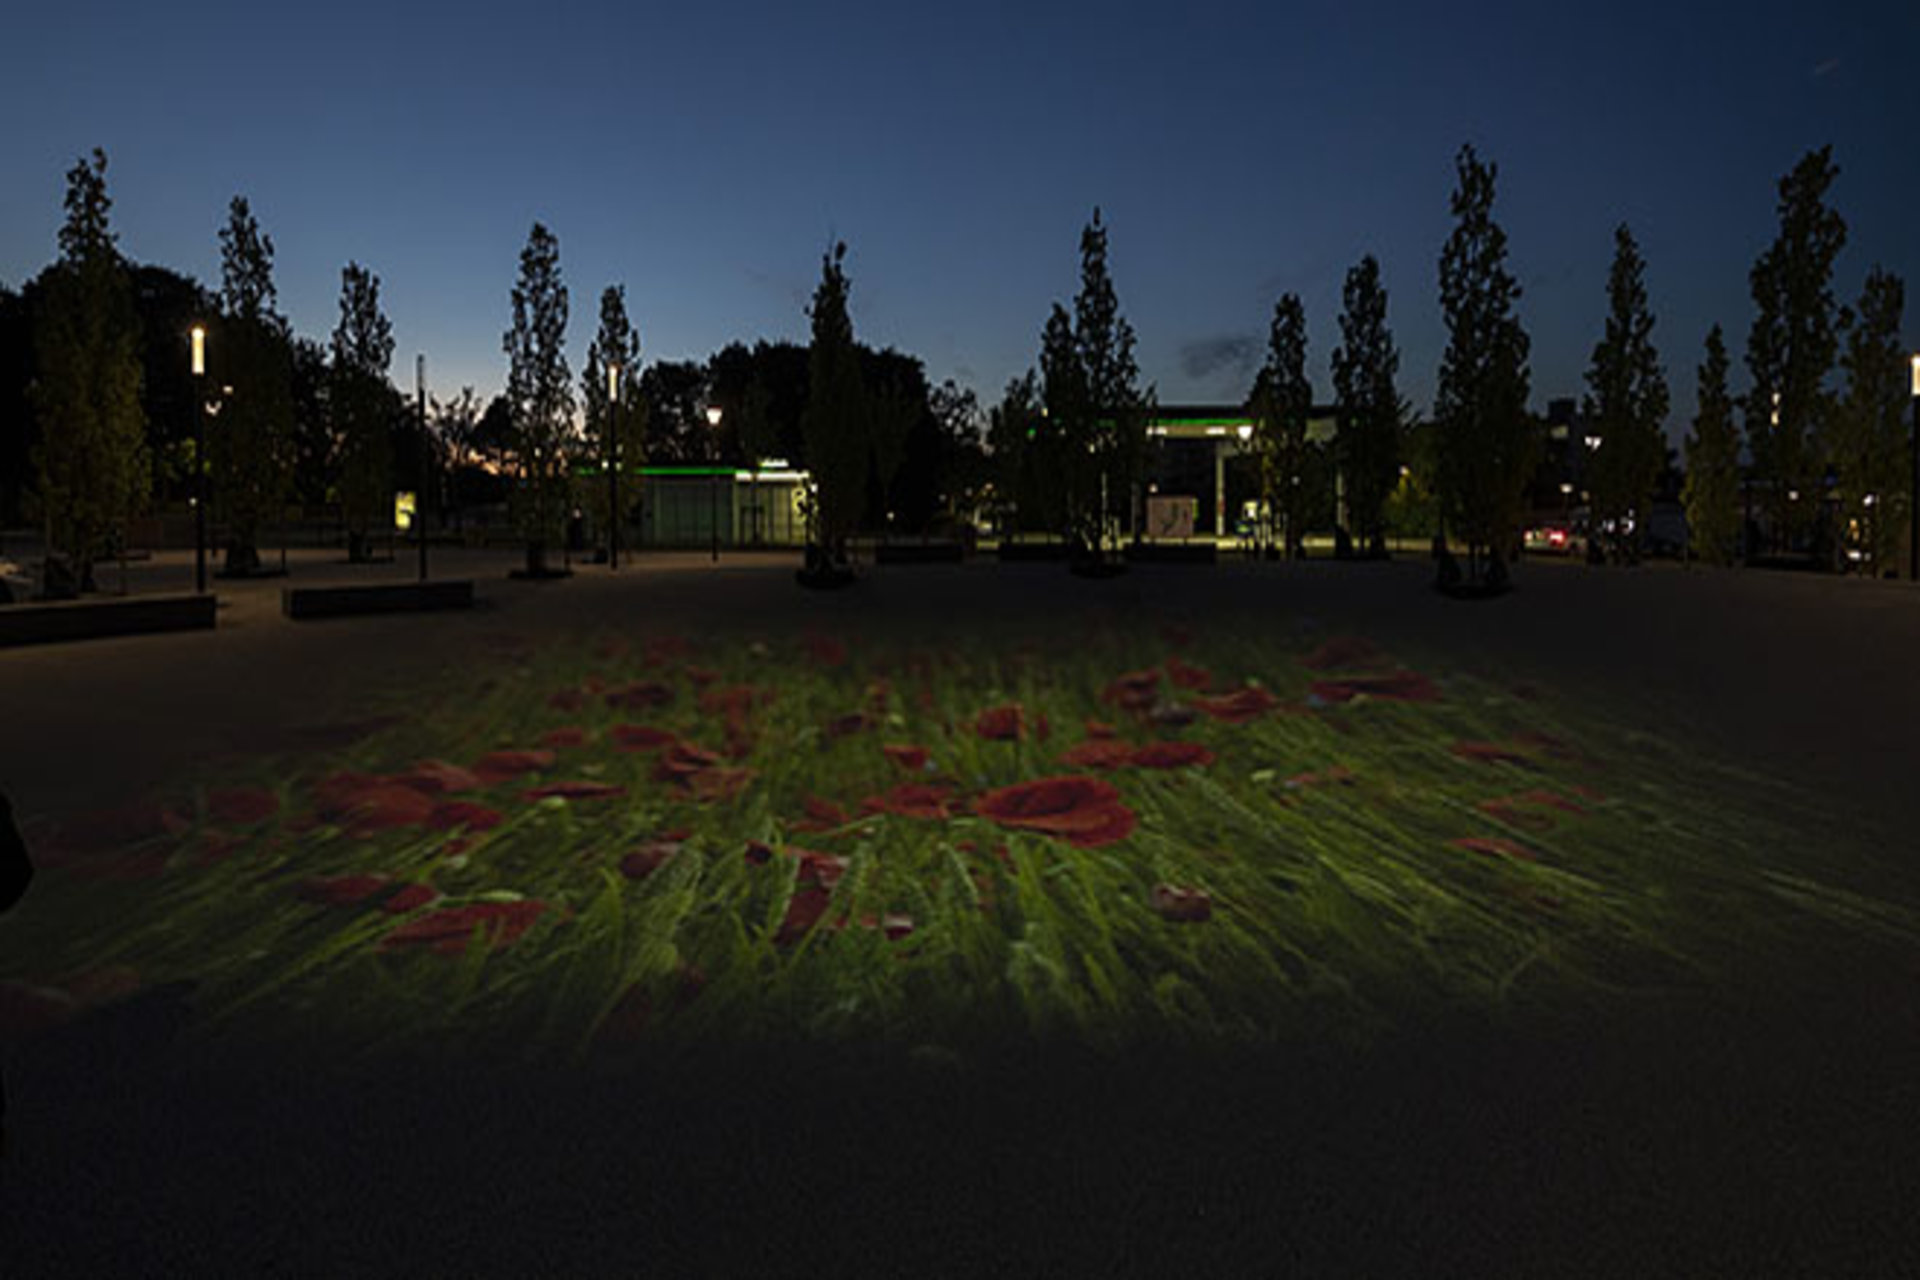 Aftenfoto af kunstværket i Kokkedal, der er en buket røde blomster. 